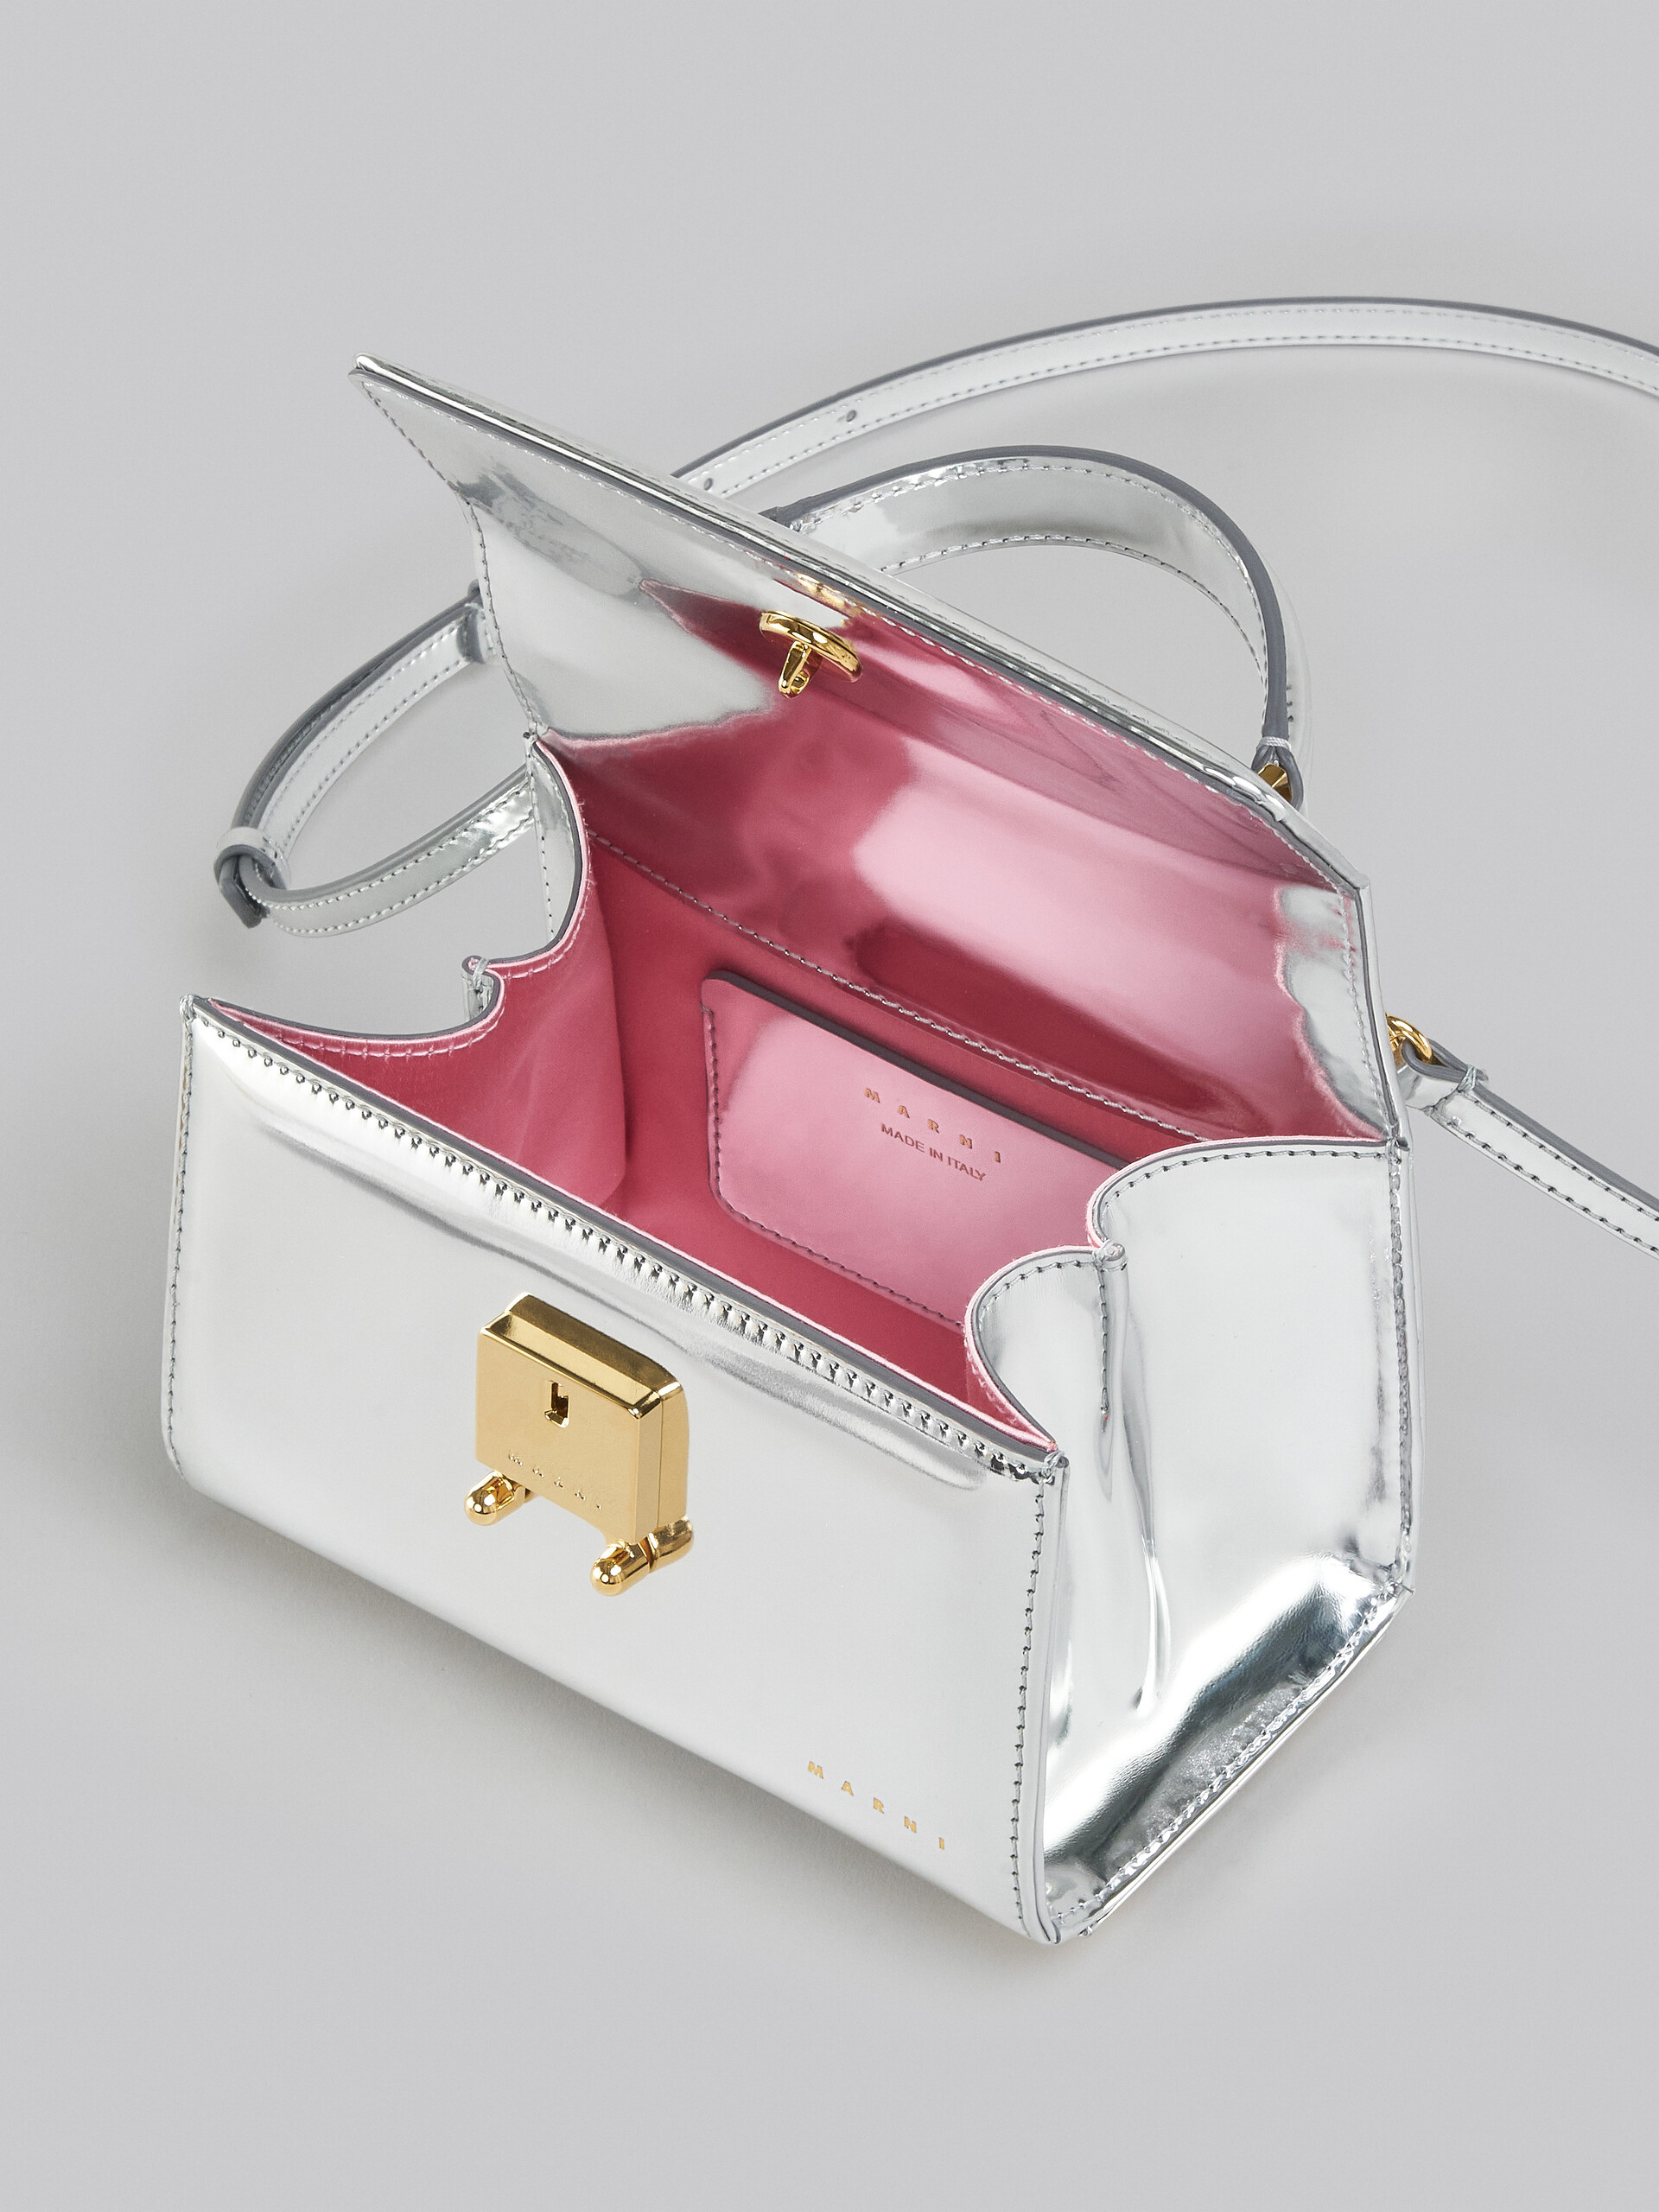 Relativity Bag Mini in pelle specchiata argento - Borse a mano - Image 4